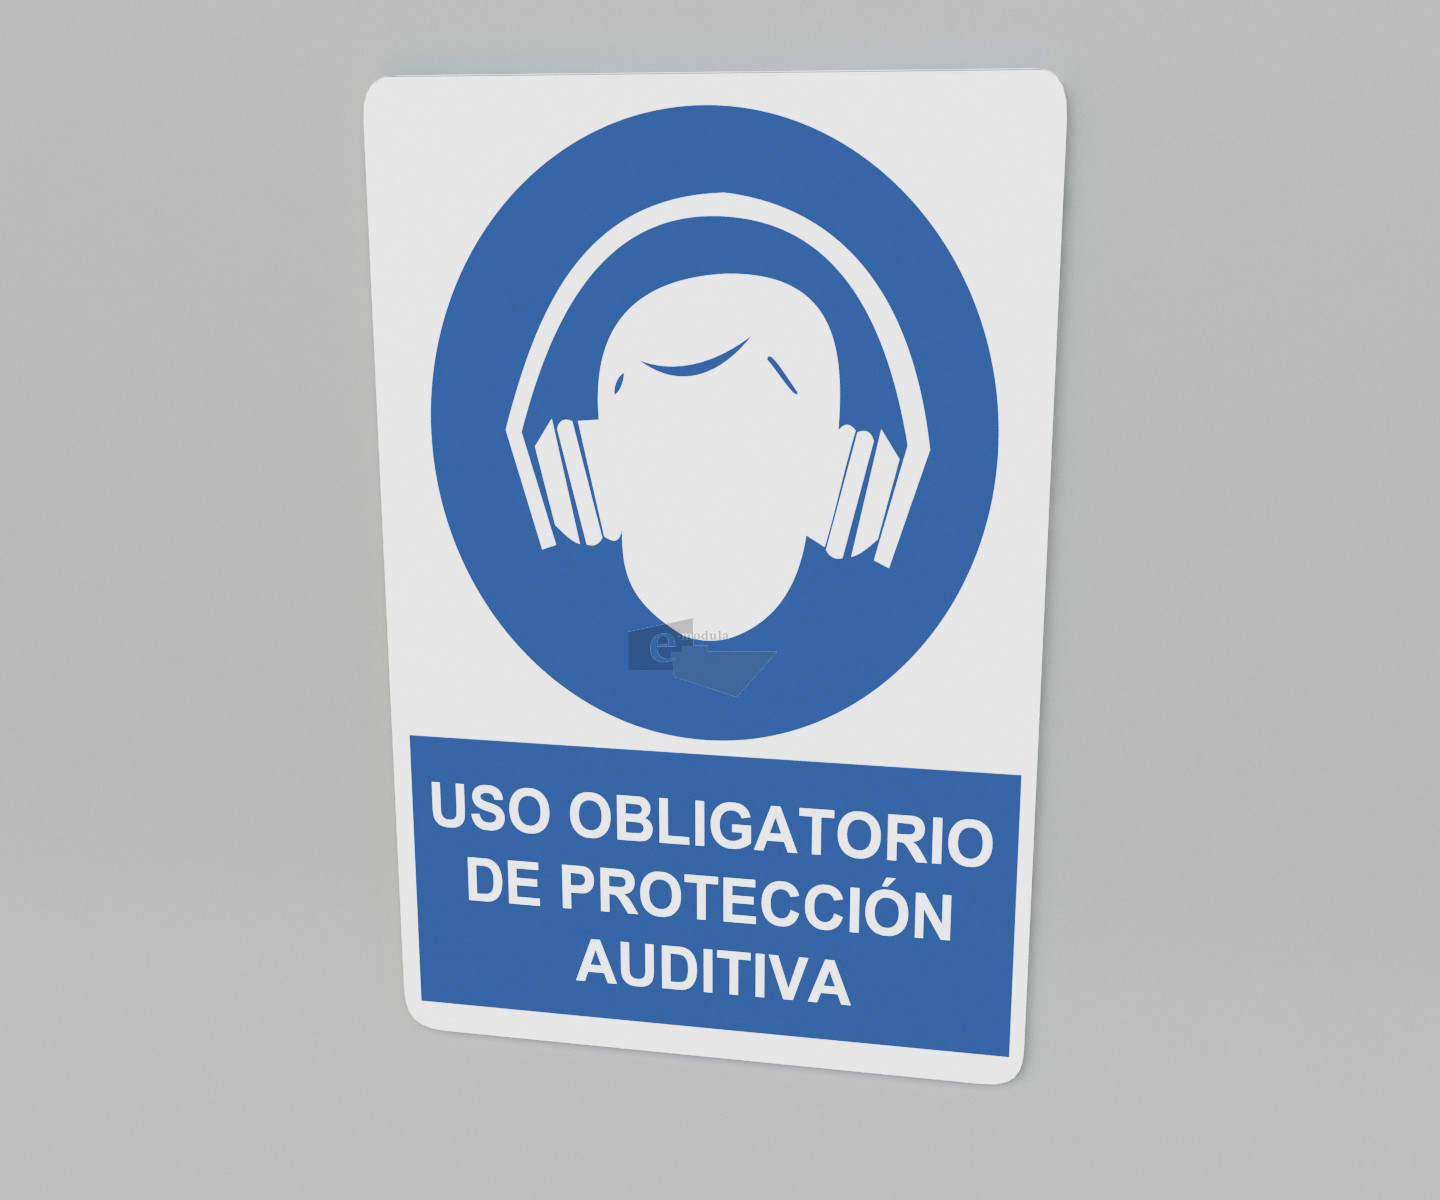 20x30cm / uso obligatorio de protección auditiva / letrero / protección civil / azul fondo blanco